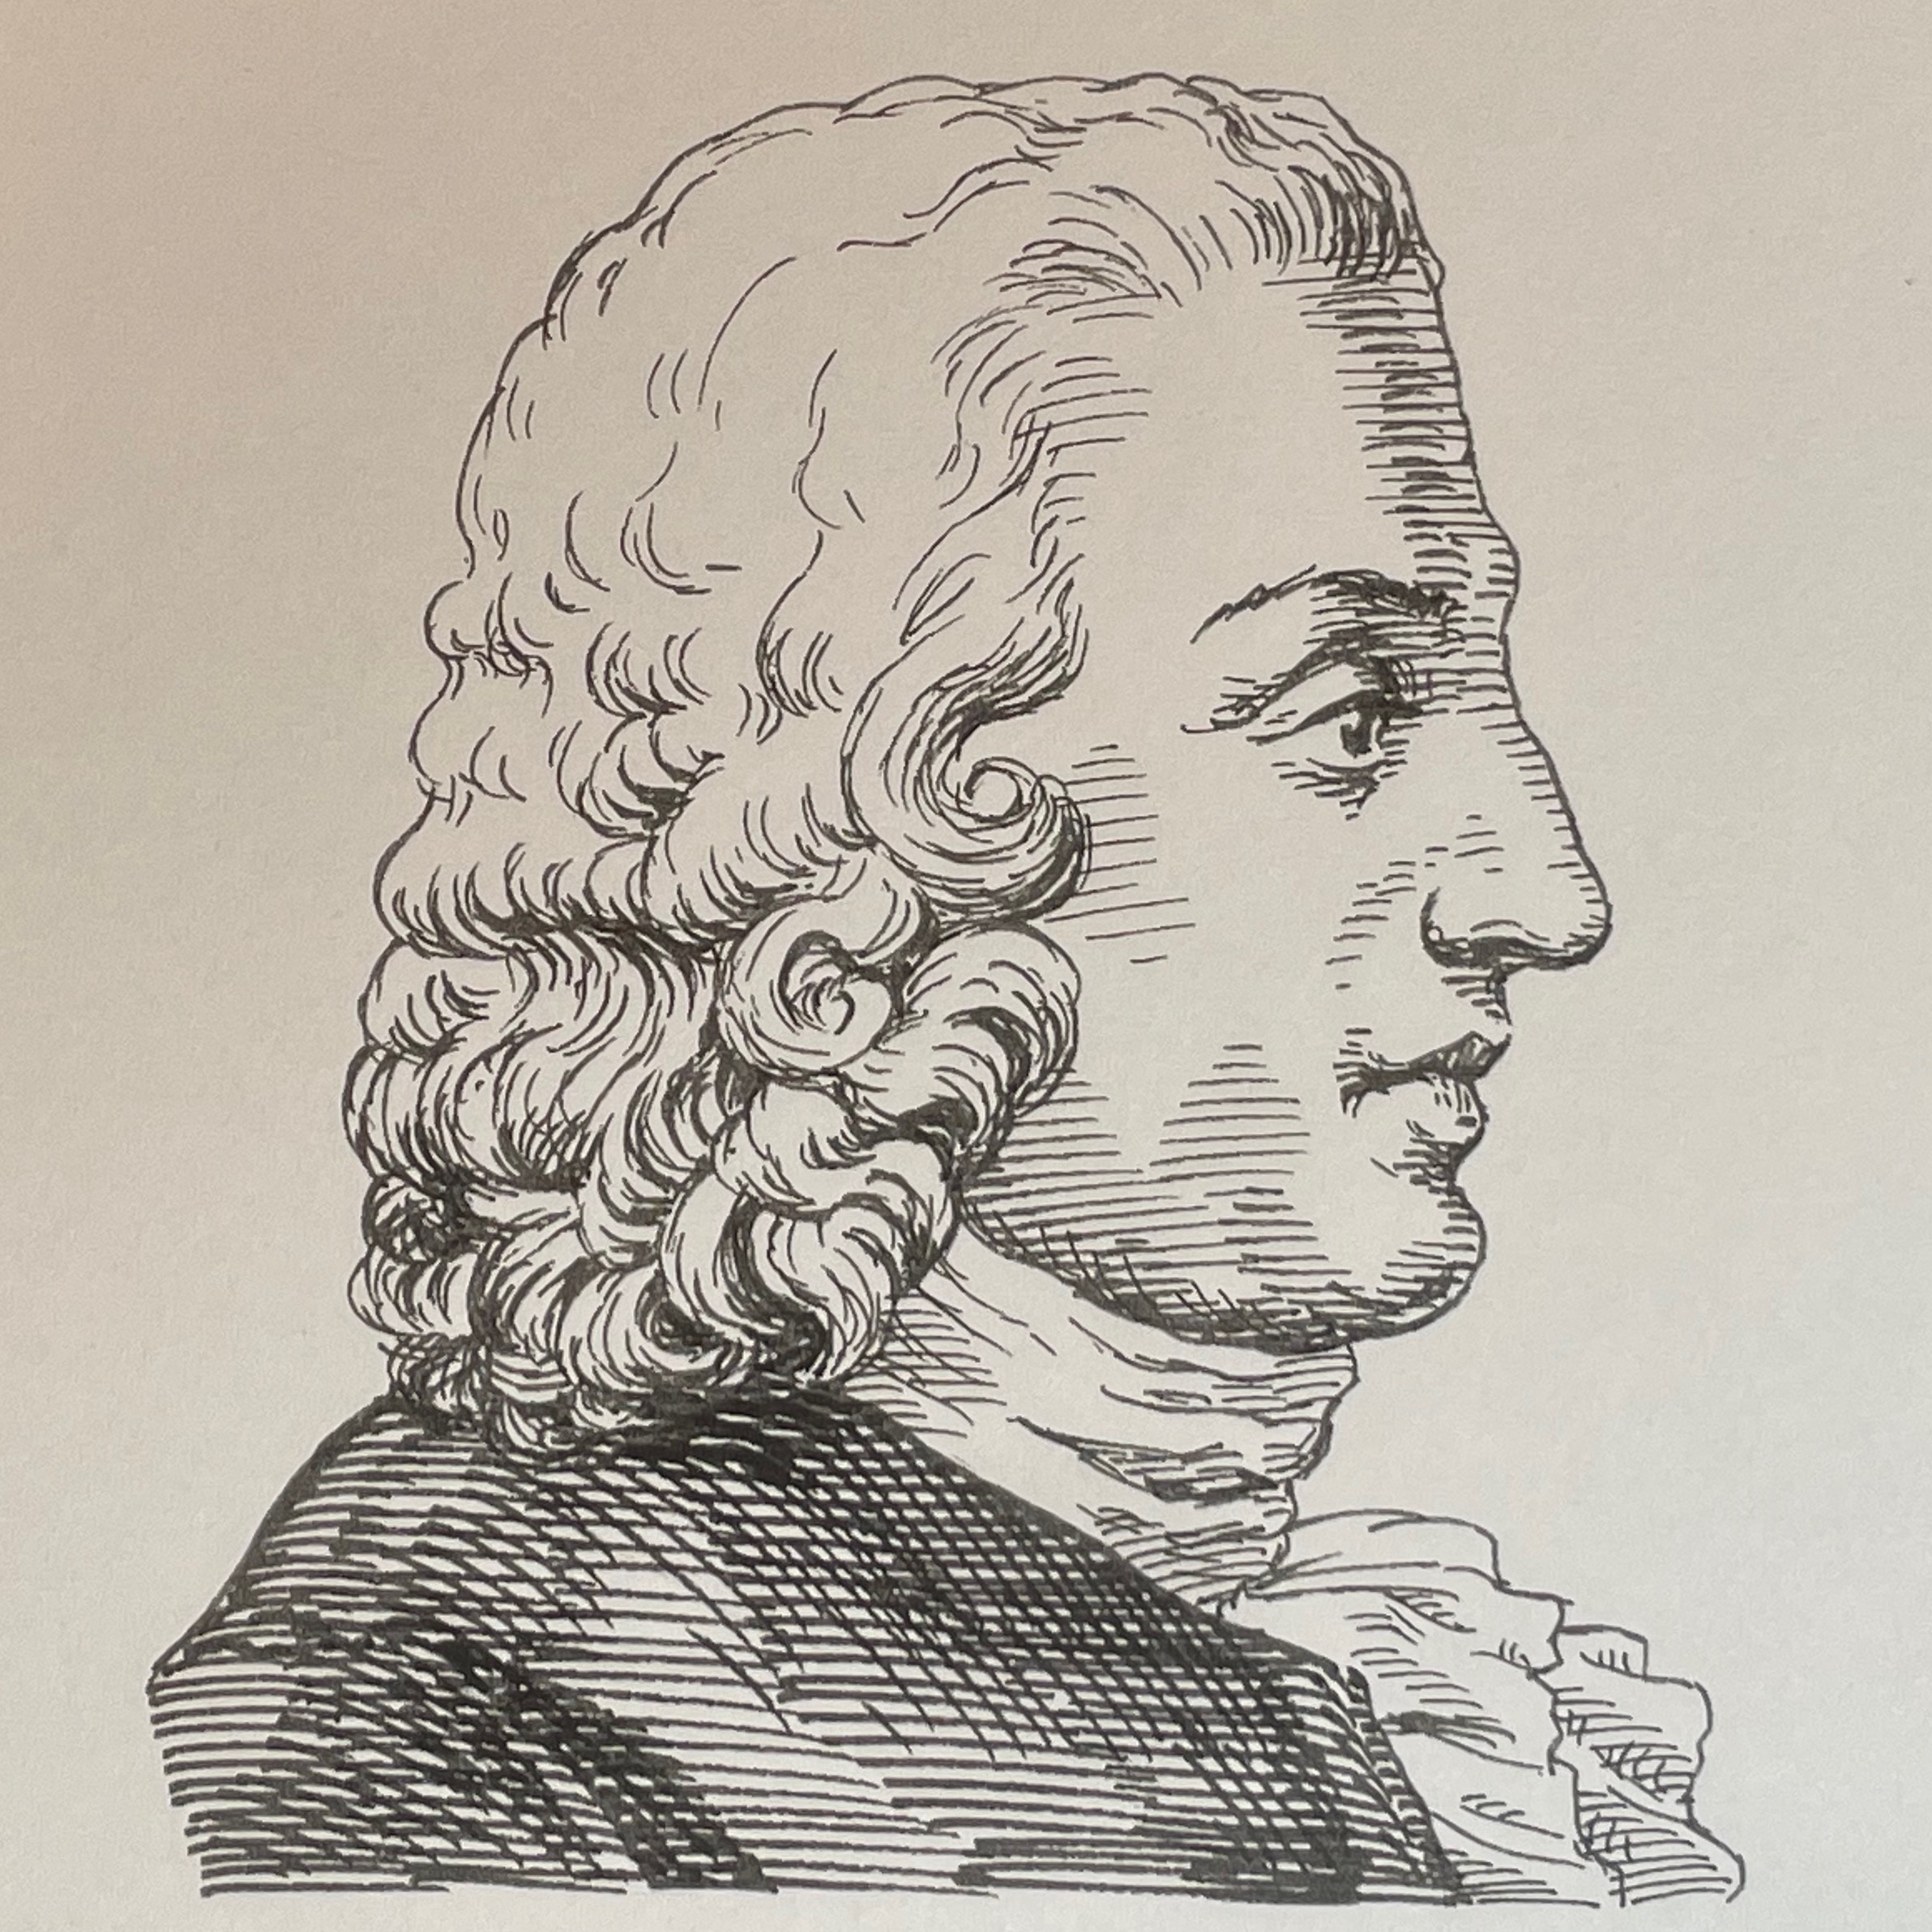 1694-1744を生きた作曲家。ナポリ楽派の祖A・スカルラッティ、同楽派の重鎮レオナルド・ヴィンチの後を継ぎ、その後のナポリ楽派を牽引した。ナポリ楽派におけるオペラ・ブッファや現代和声法(harmony)を確立した一人としてその名を刻んでいる。また指導者としても名高く、ペルゴレージ、ピッチンニ、ヨンメッリなどが門下で育った。